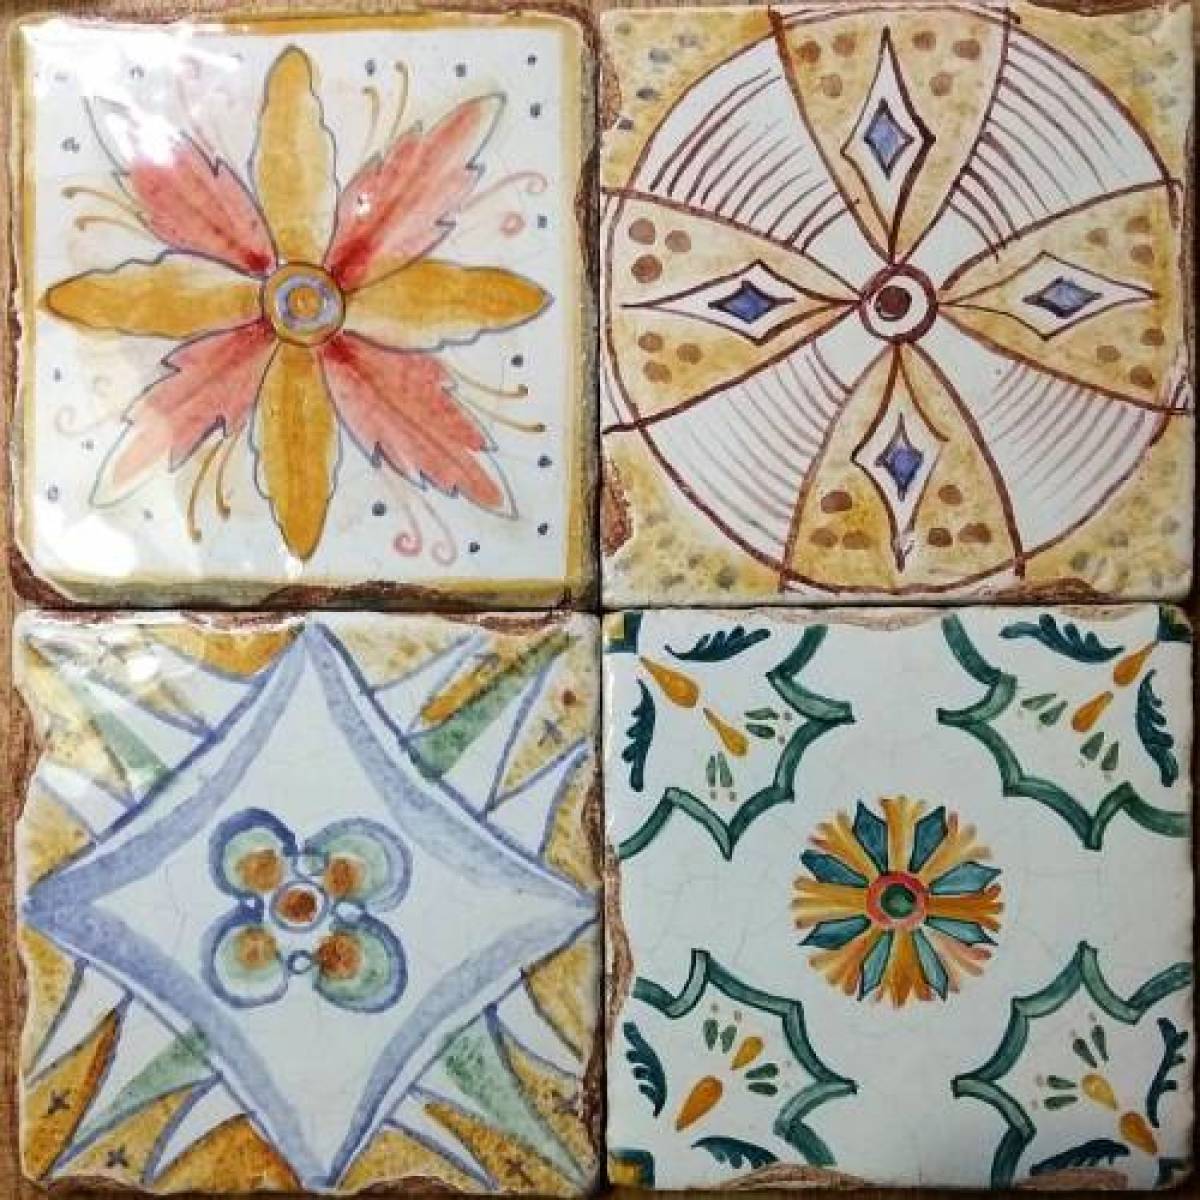 Coloring book educational ceramic tiles